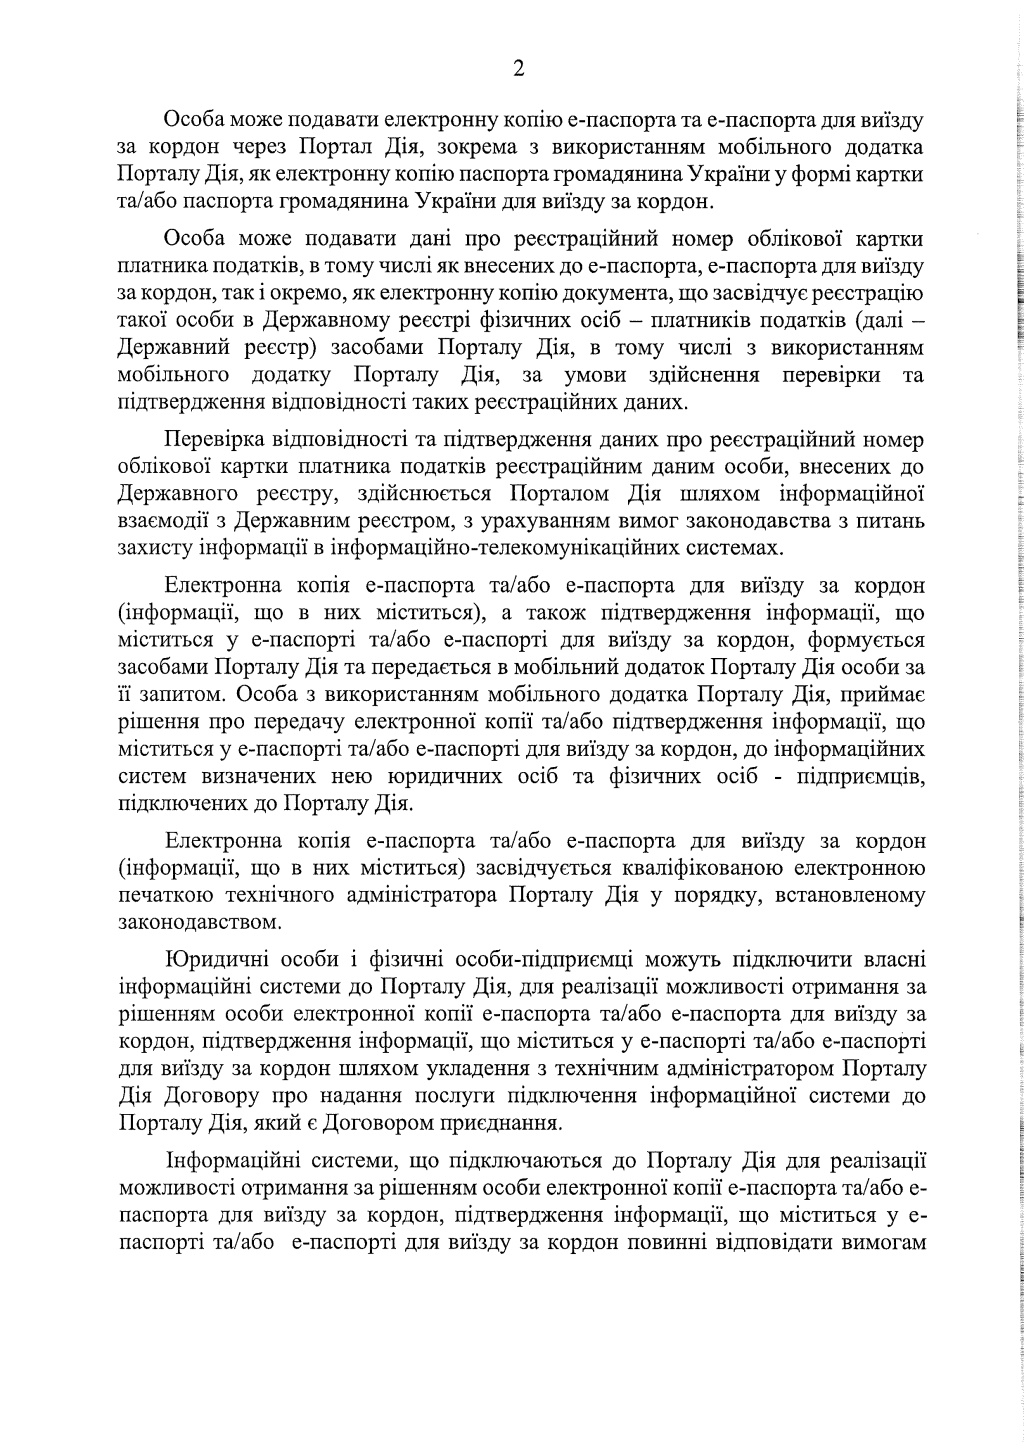 Кабинет министров Украины анонсировал расширение возможностей е-паспорта через приложение ”Дія”  - фото 4